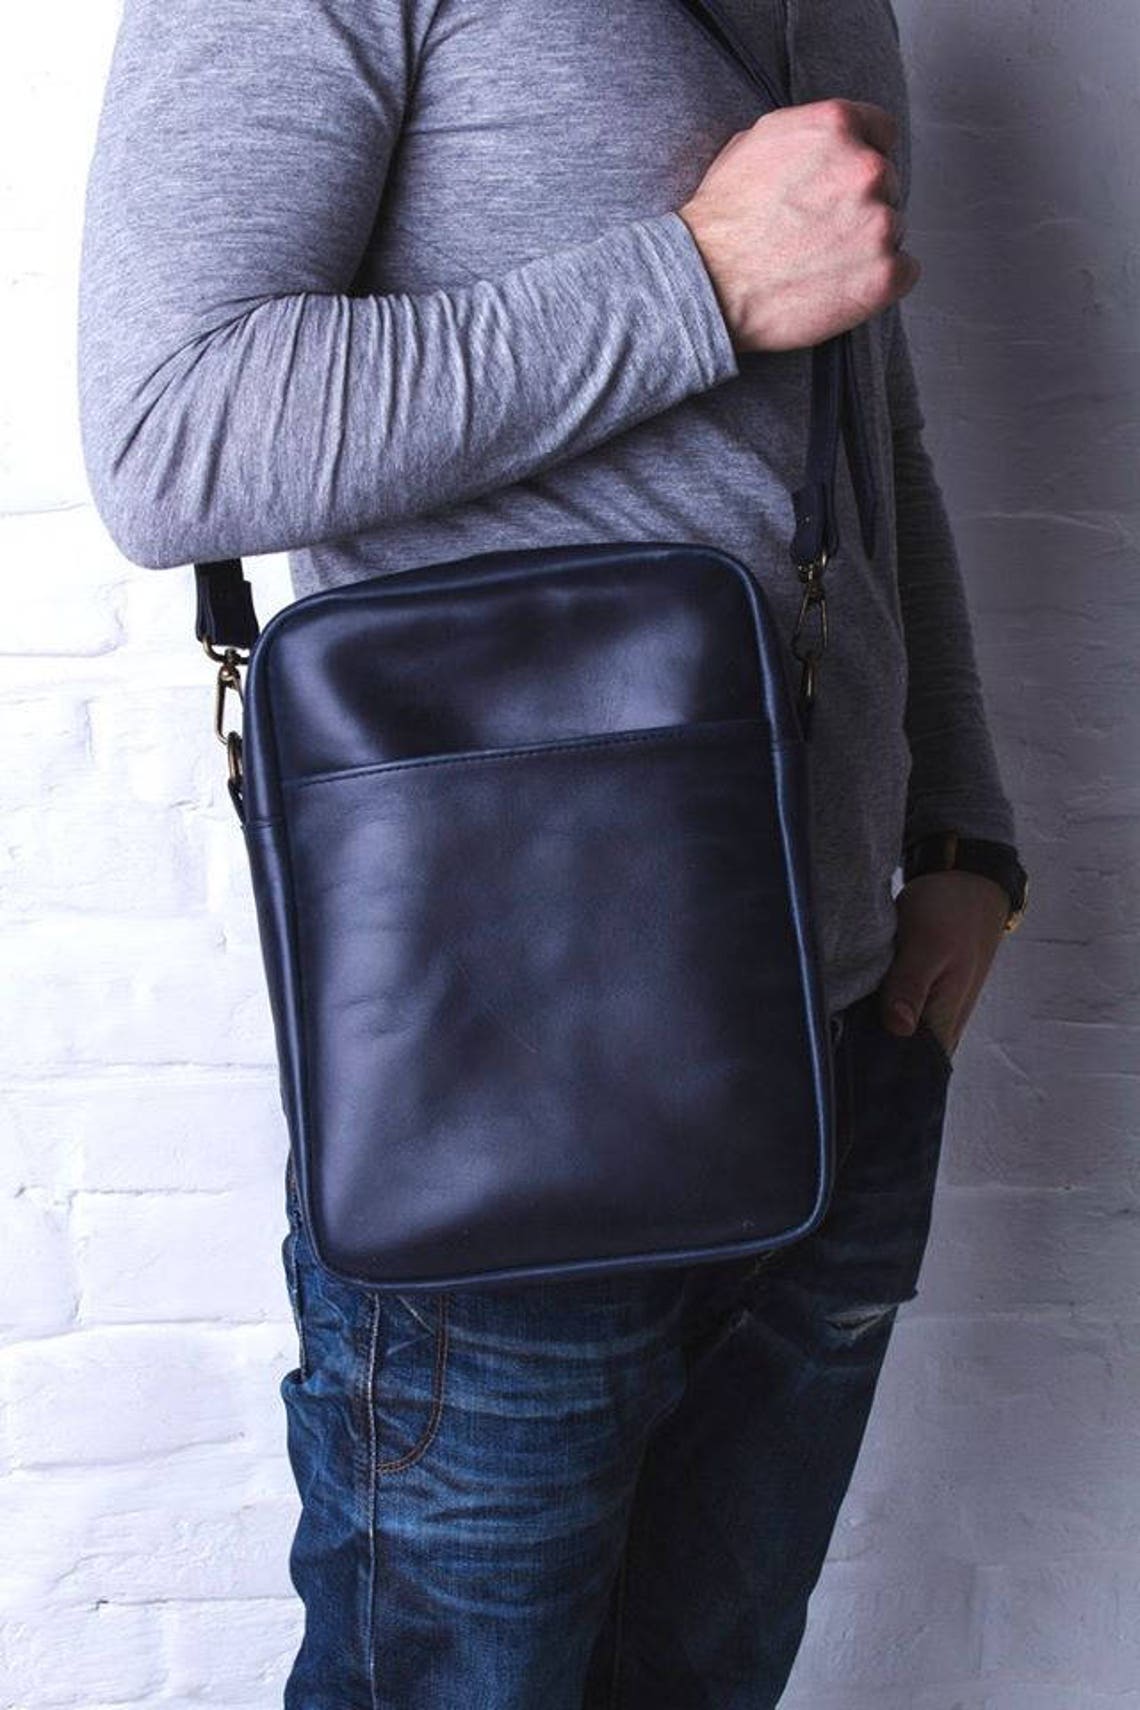 LEATHER MENS BAG vertical mens bag leather shoulder bag men | Etsy